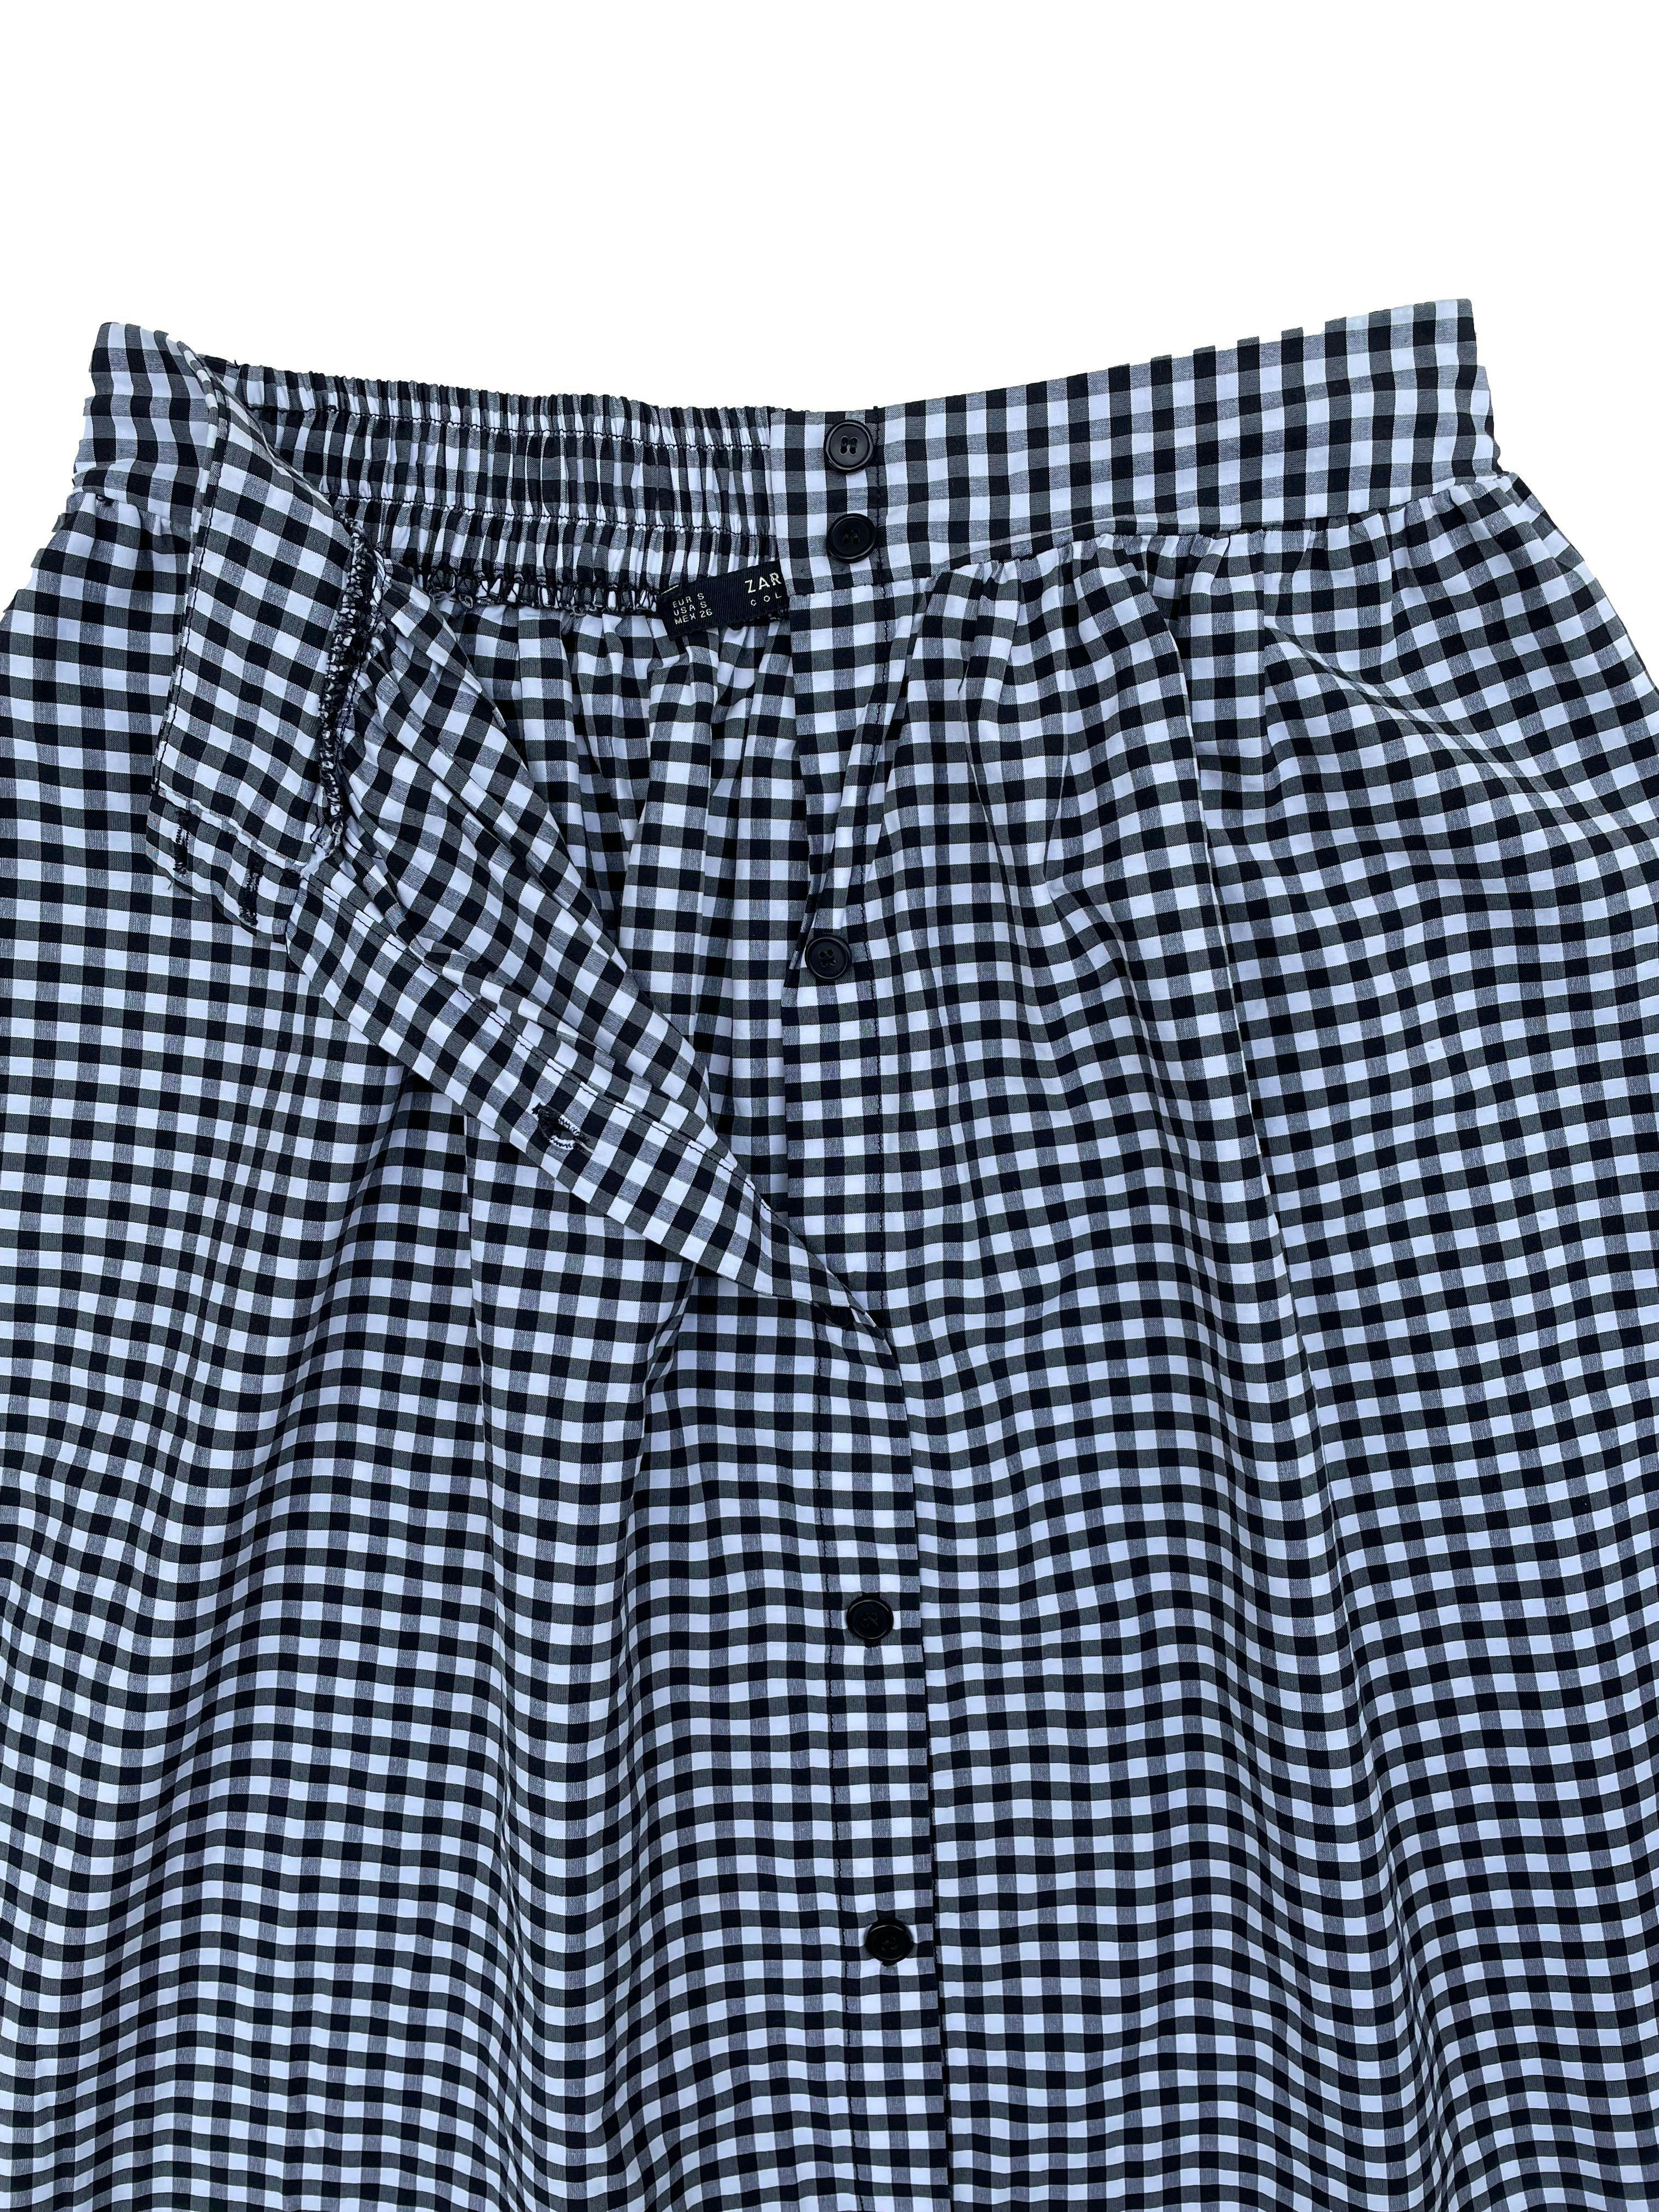 Falda midi Zara cuadros vichy en blanco y negro, tela fresca 67% algodón,con botones al frente, bolsillos laterales y cintura elástica. Pretina 68cm sin estirar, Largo 70cm.